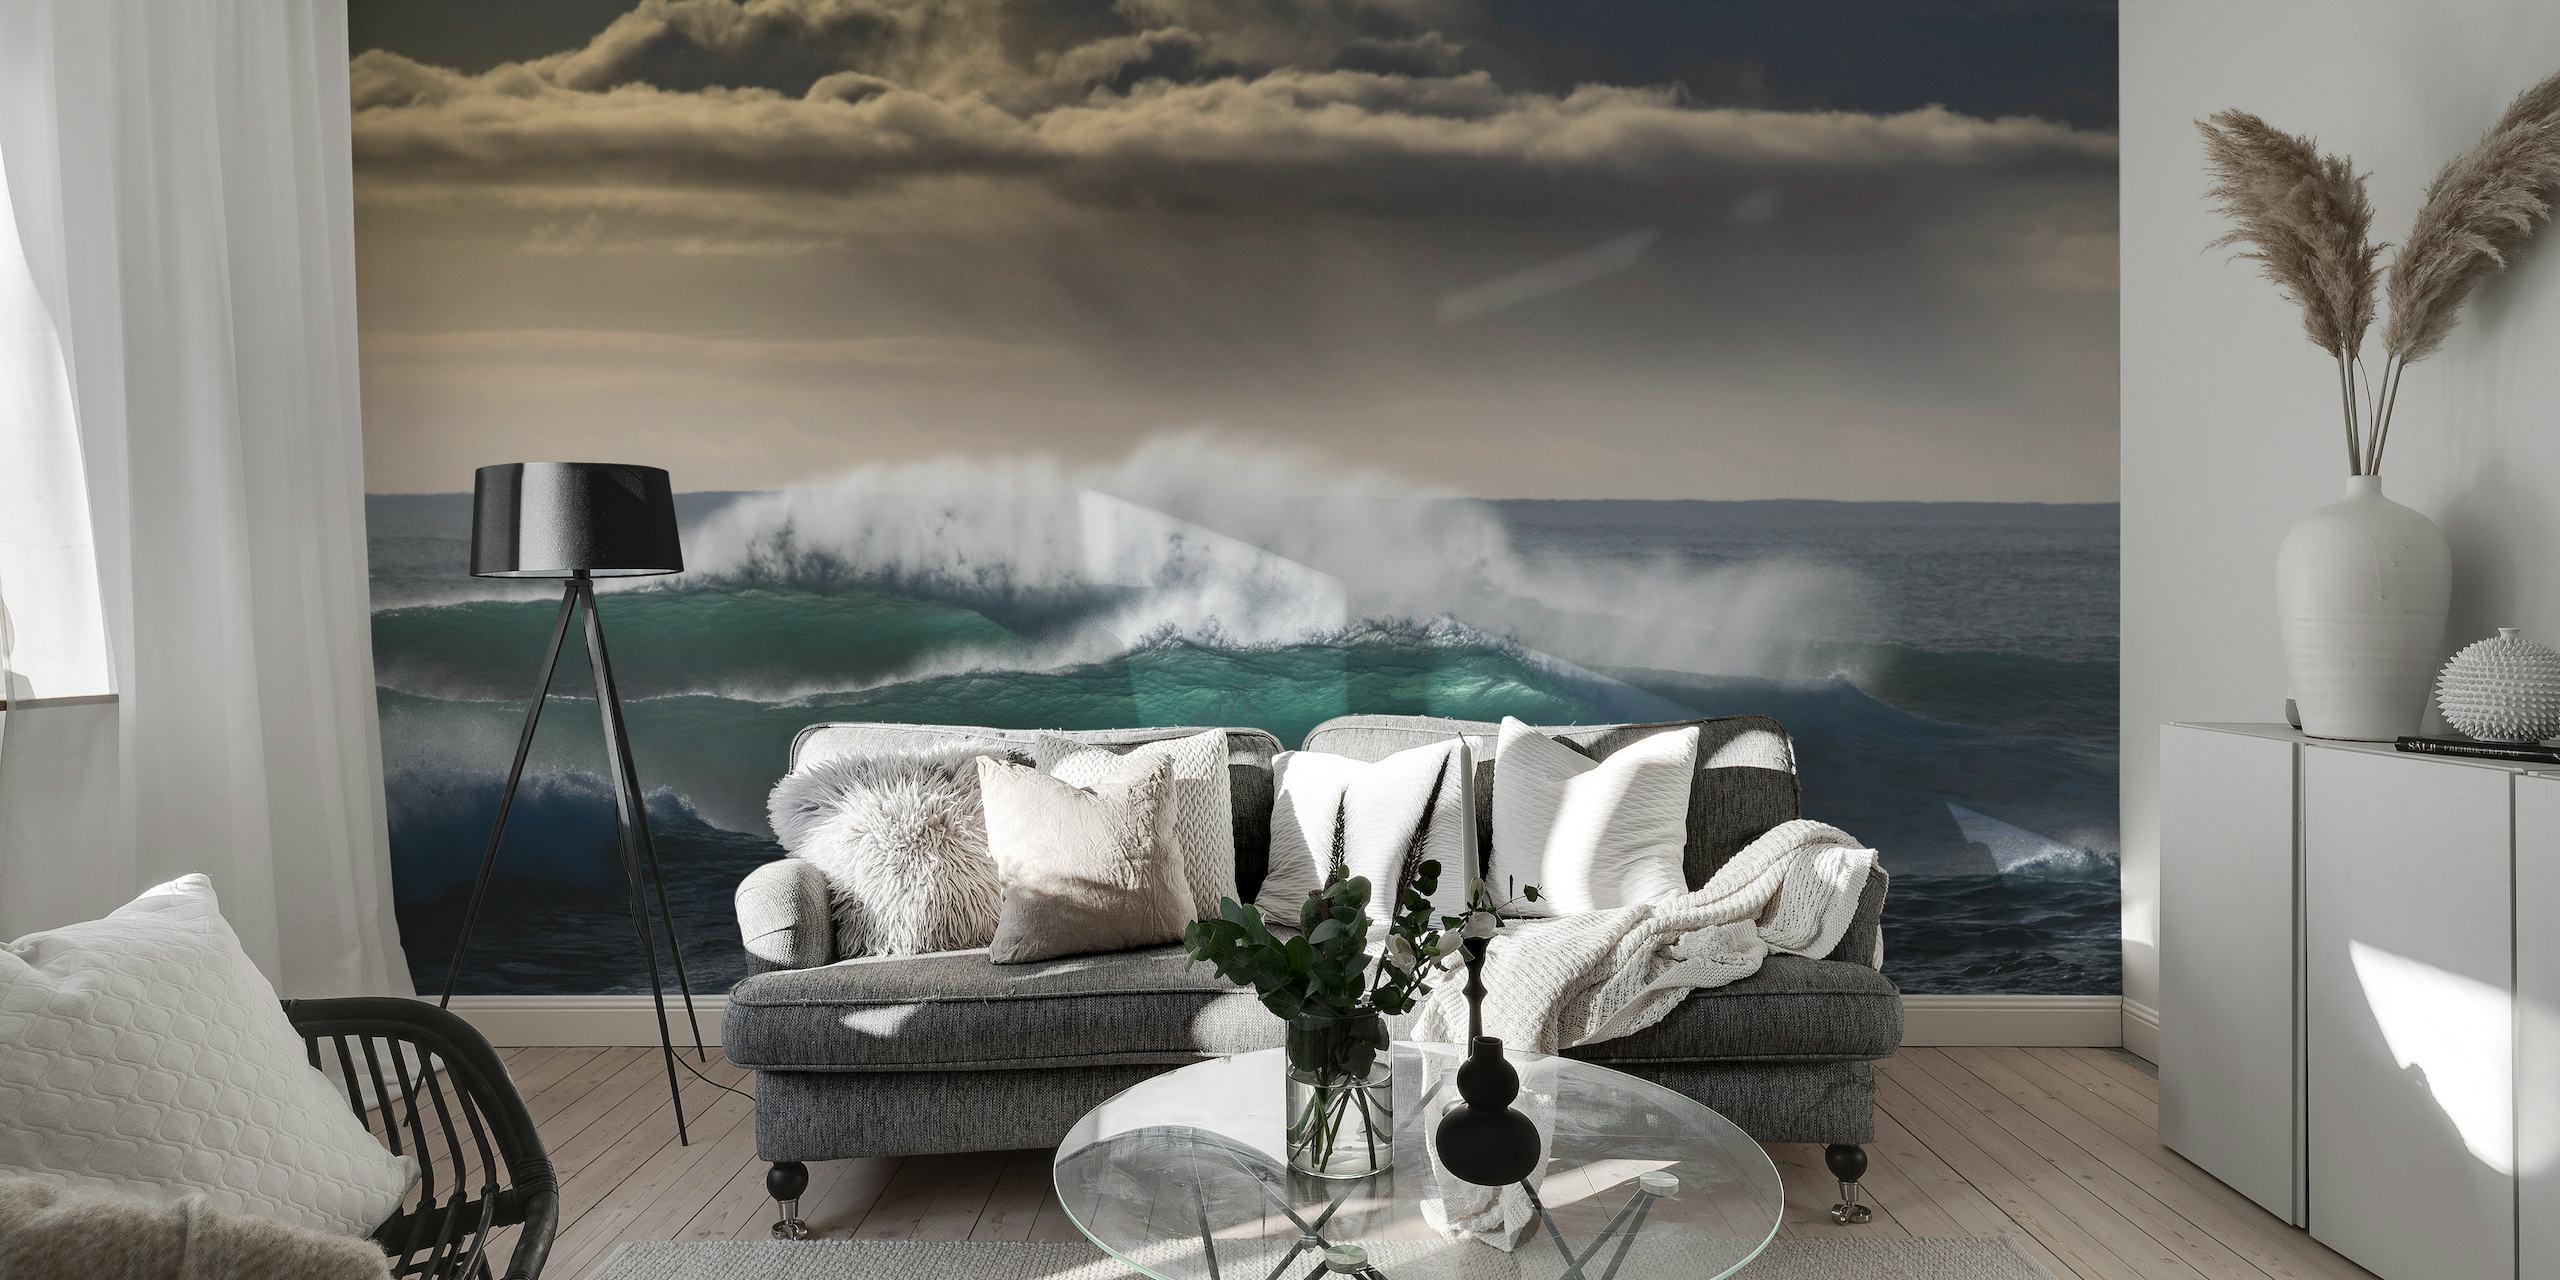 Fotomural vinílico de ondas do mar mostrando força e movimento